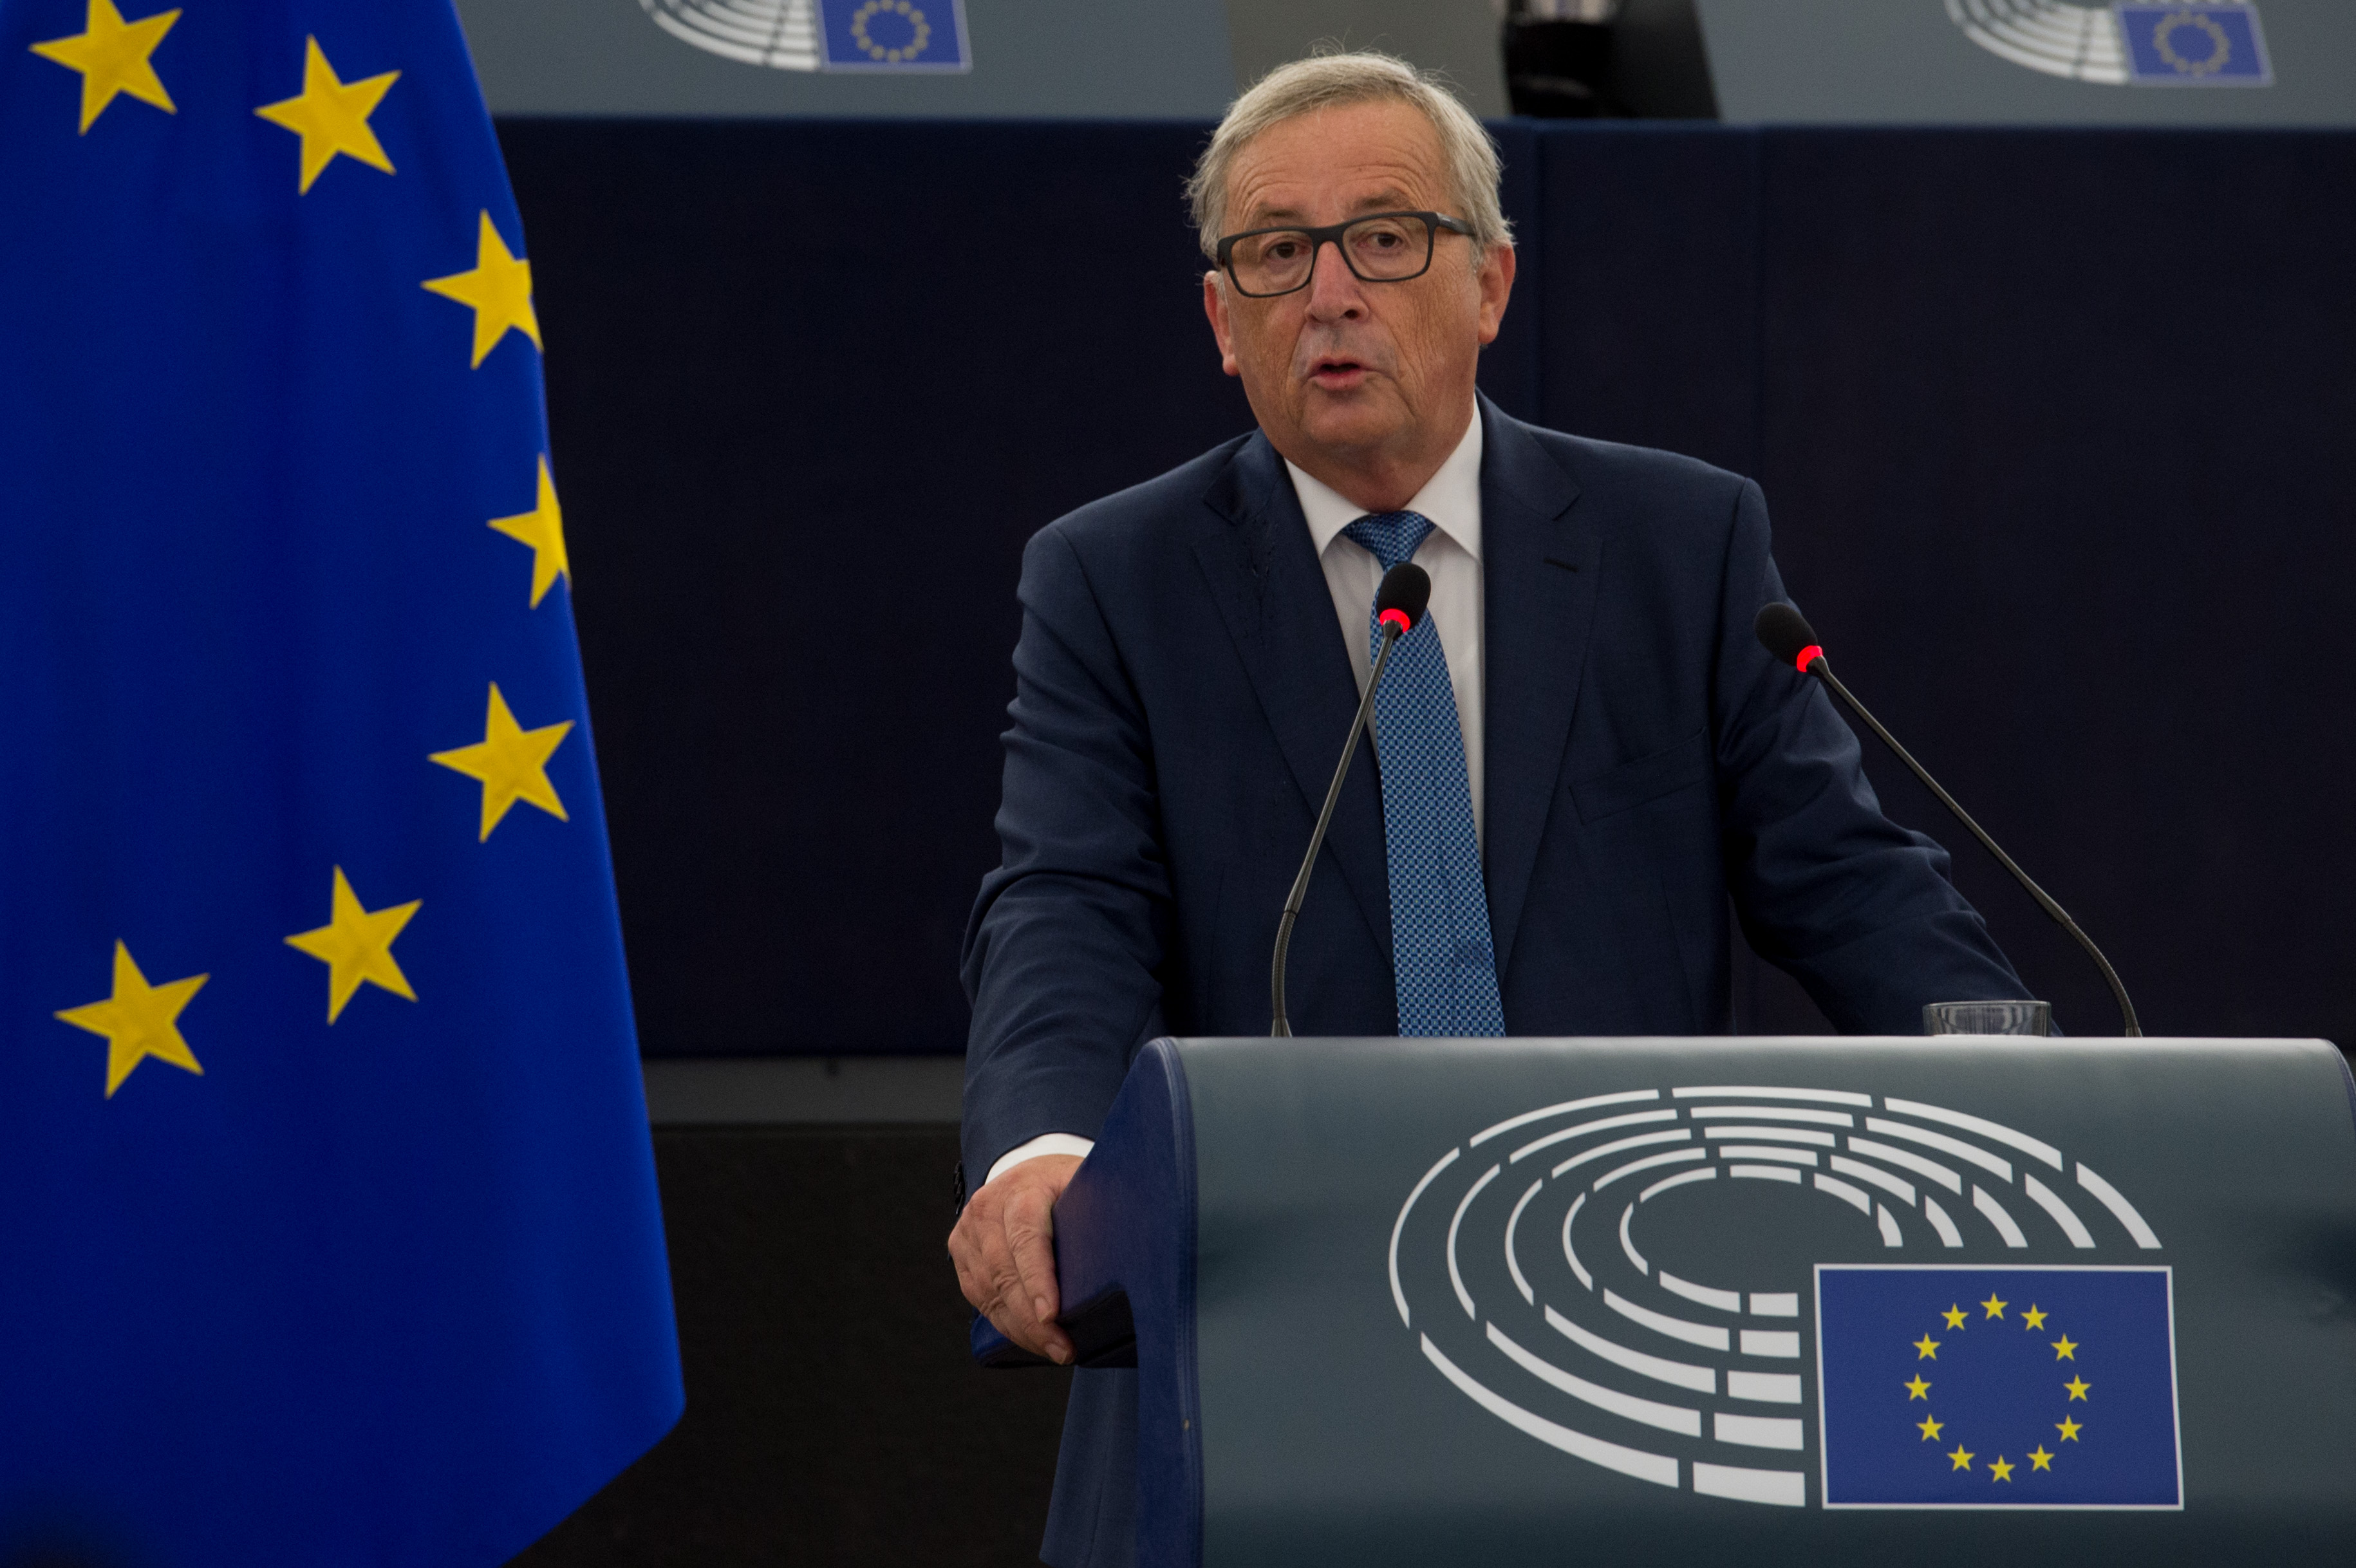 Ζαν – Κλοντ Γιούνκερ: «Η Ευρώπη διέρχεται υπαρξιακή κρίση αλλά πρέπει να βρούμε αυτά που μας ενώνουν»